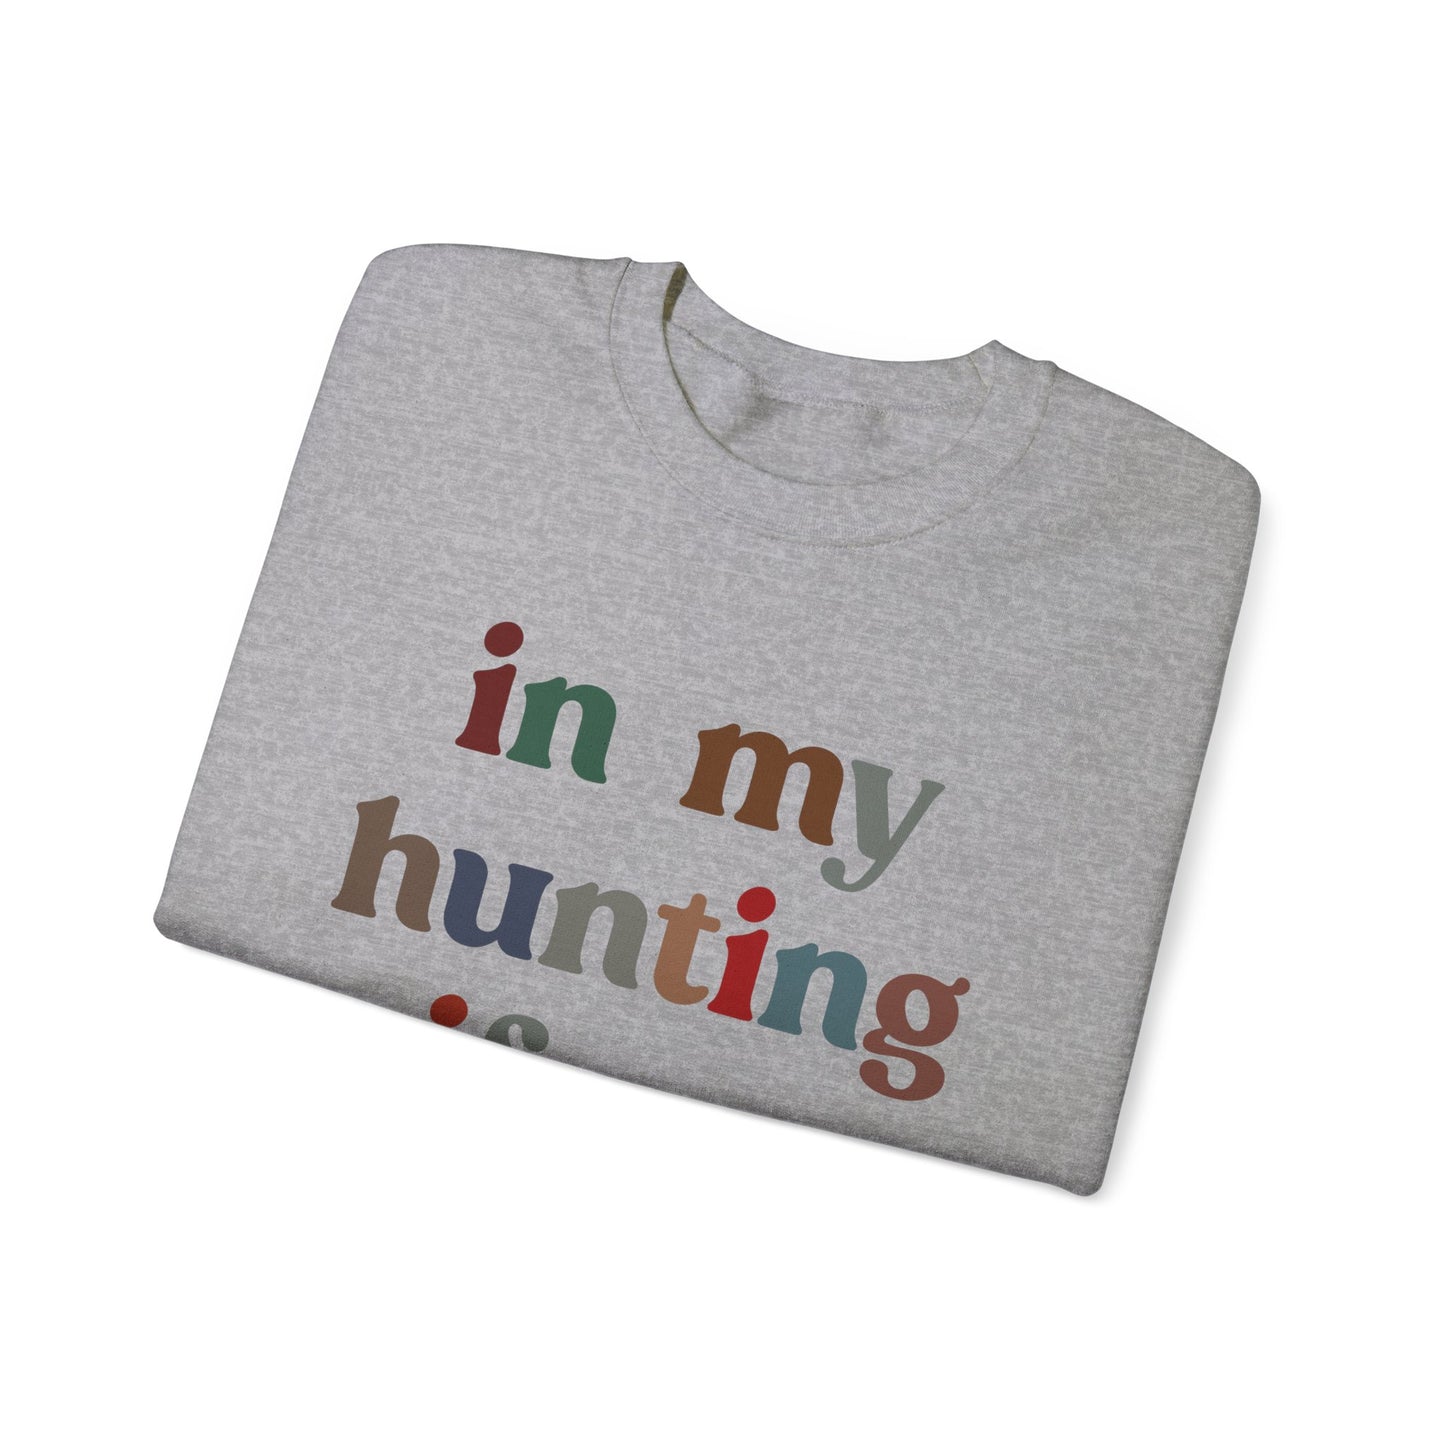 In My Hunting Wife Era Sweatshirt, Hunter Wife Sweatshirt, Gift for Wife from Husband, Hunting Wife Sweatshirt, Hunting Season Shirt, S1320